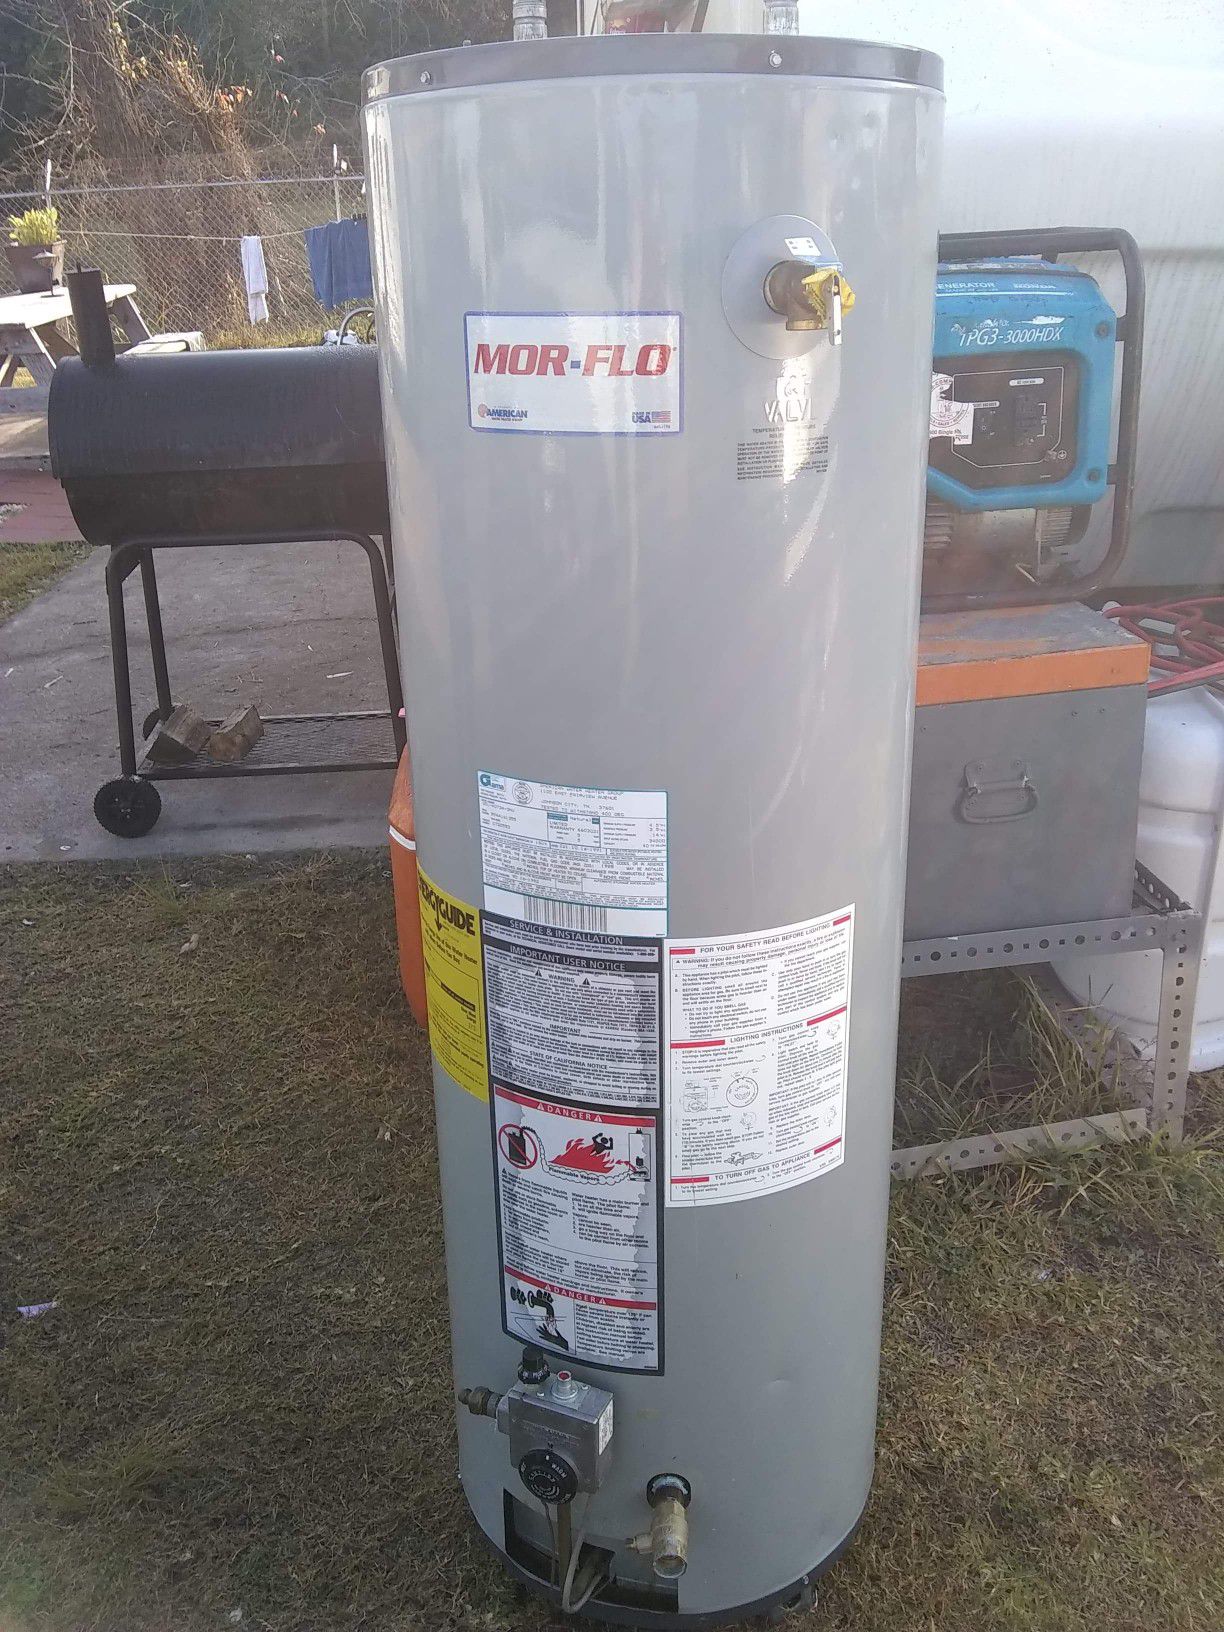 Mor flo 40 gallon gas hot water heater